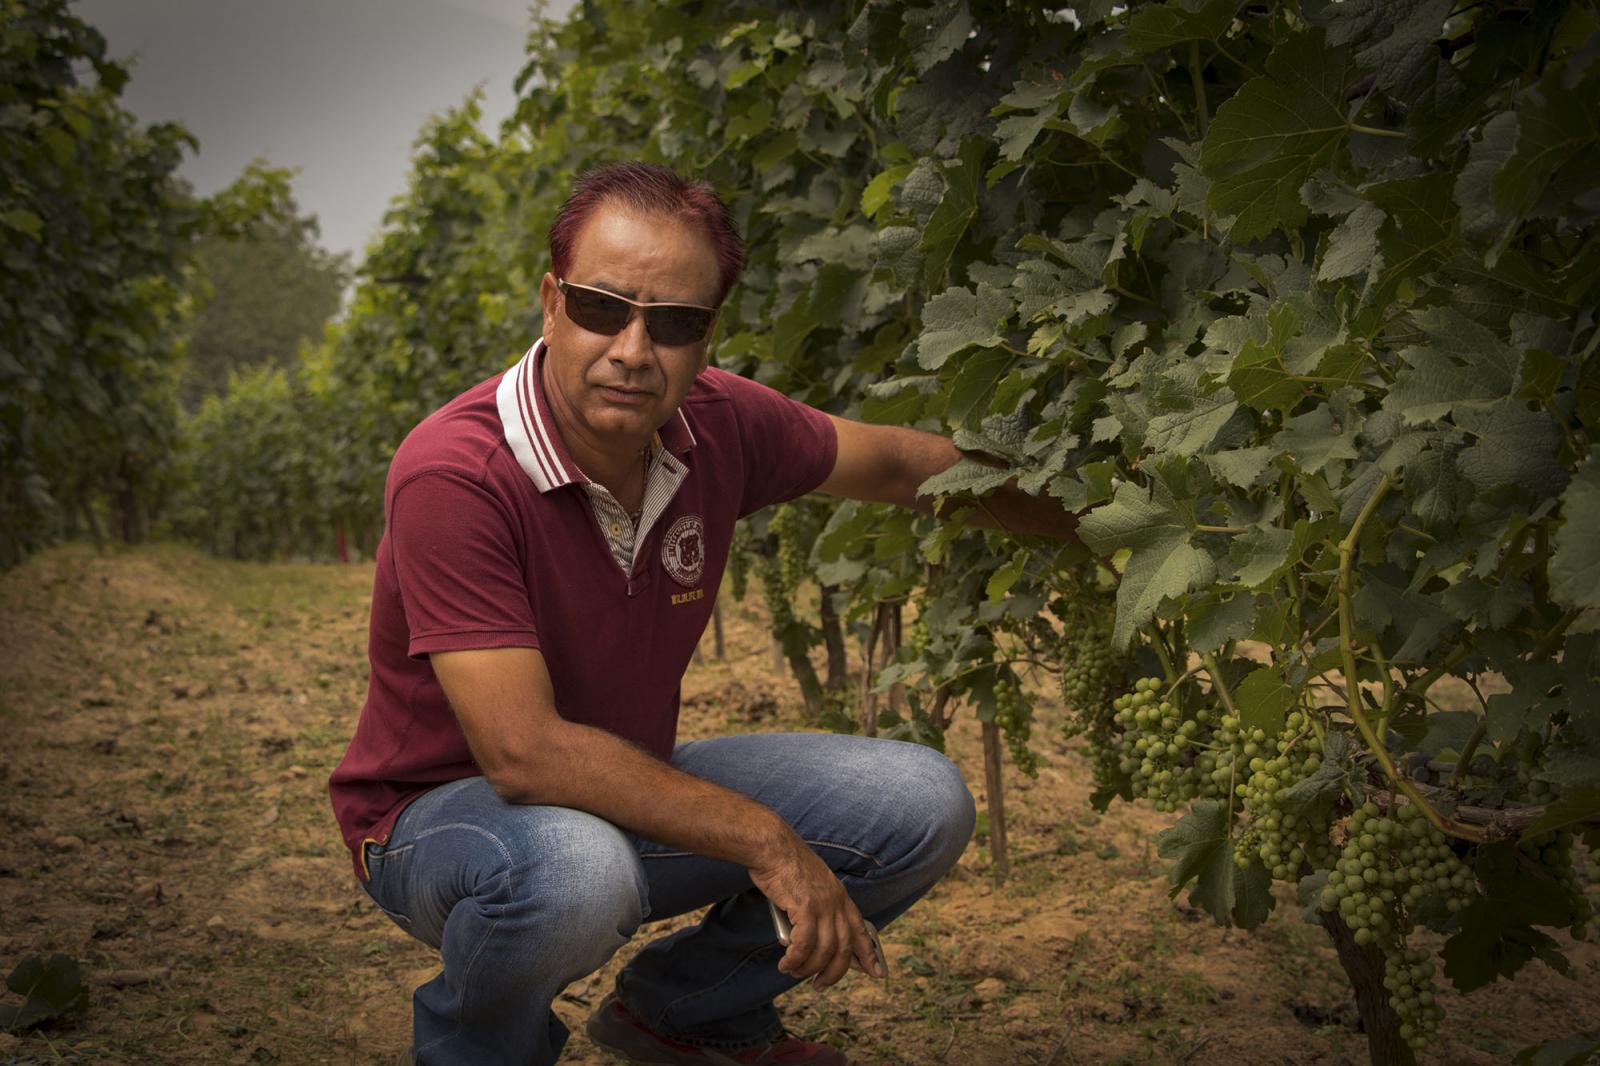 Pataleban vineyard resort: The story of Nepal's pioneering vineyard ...